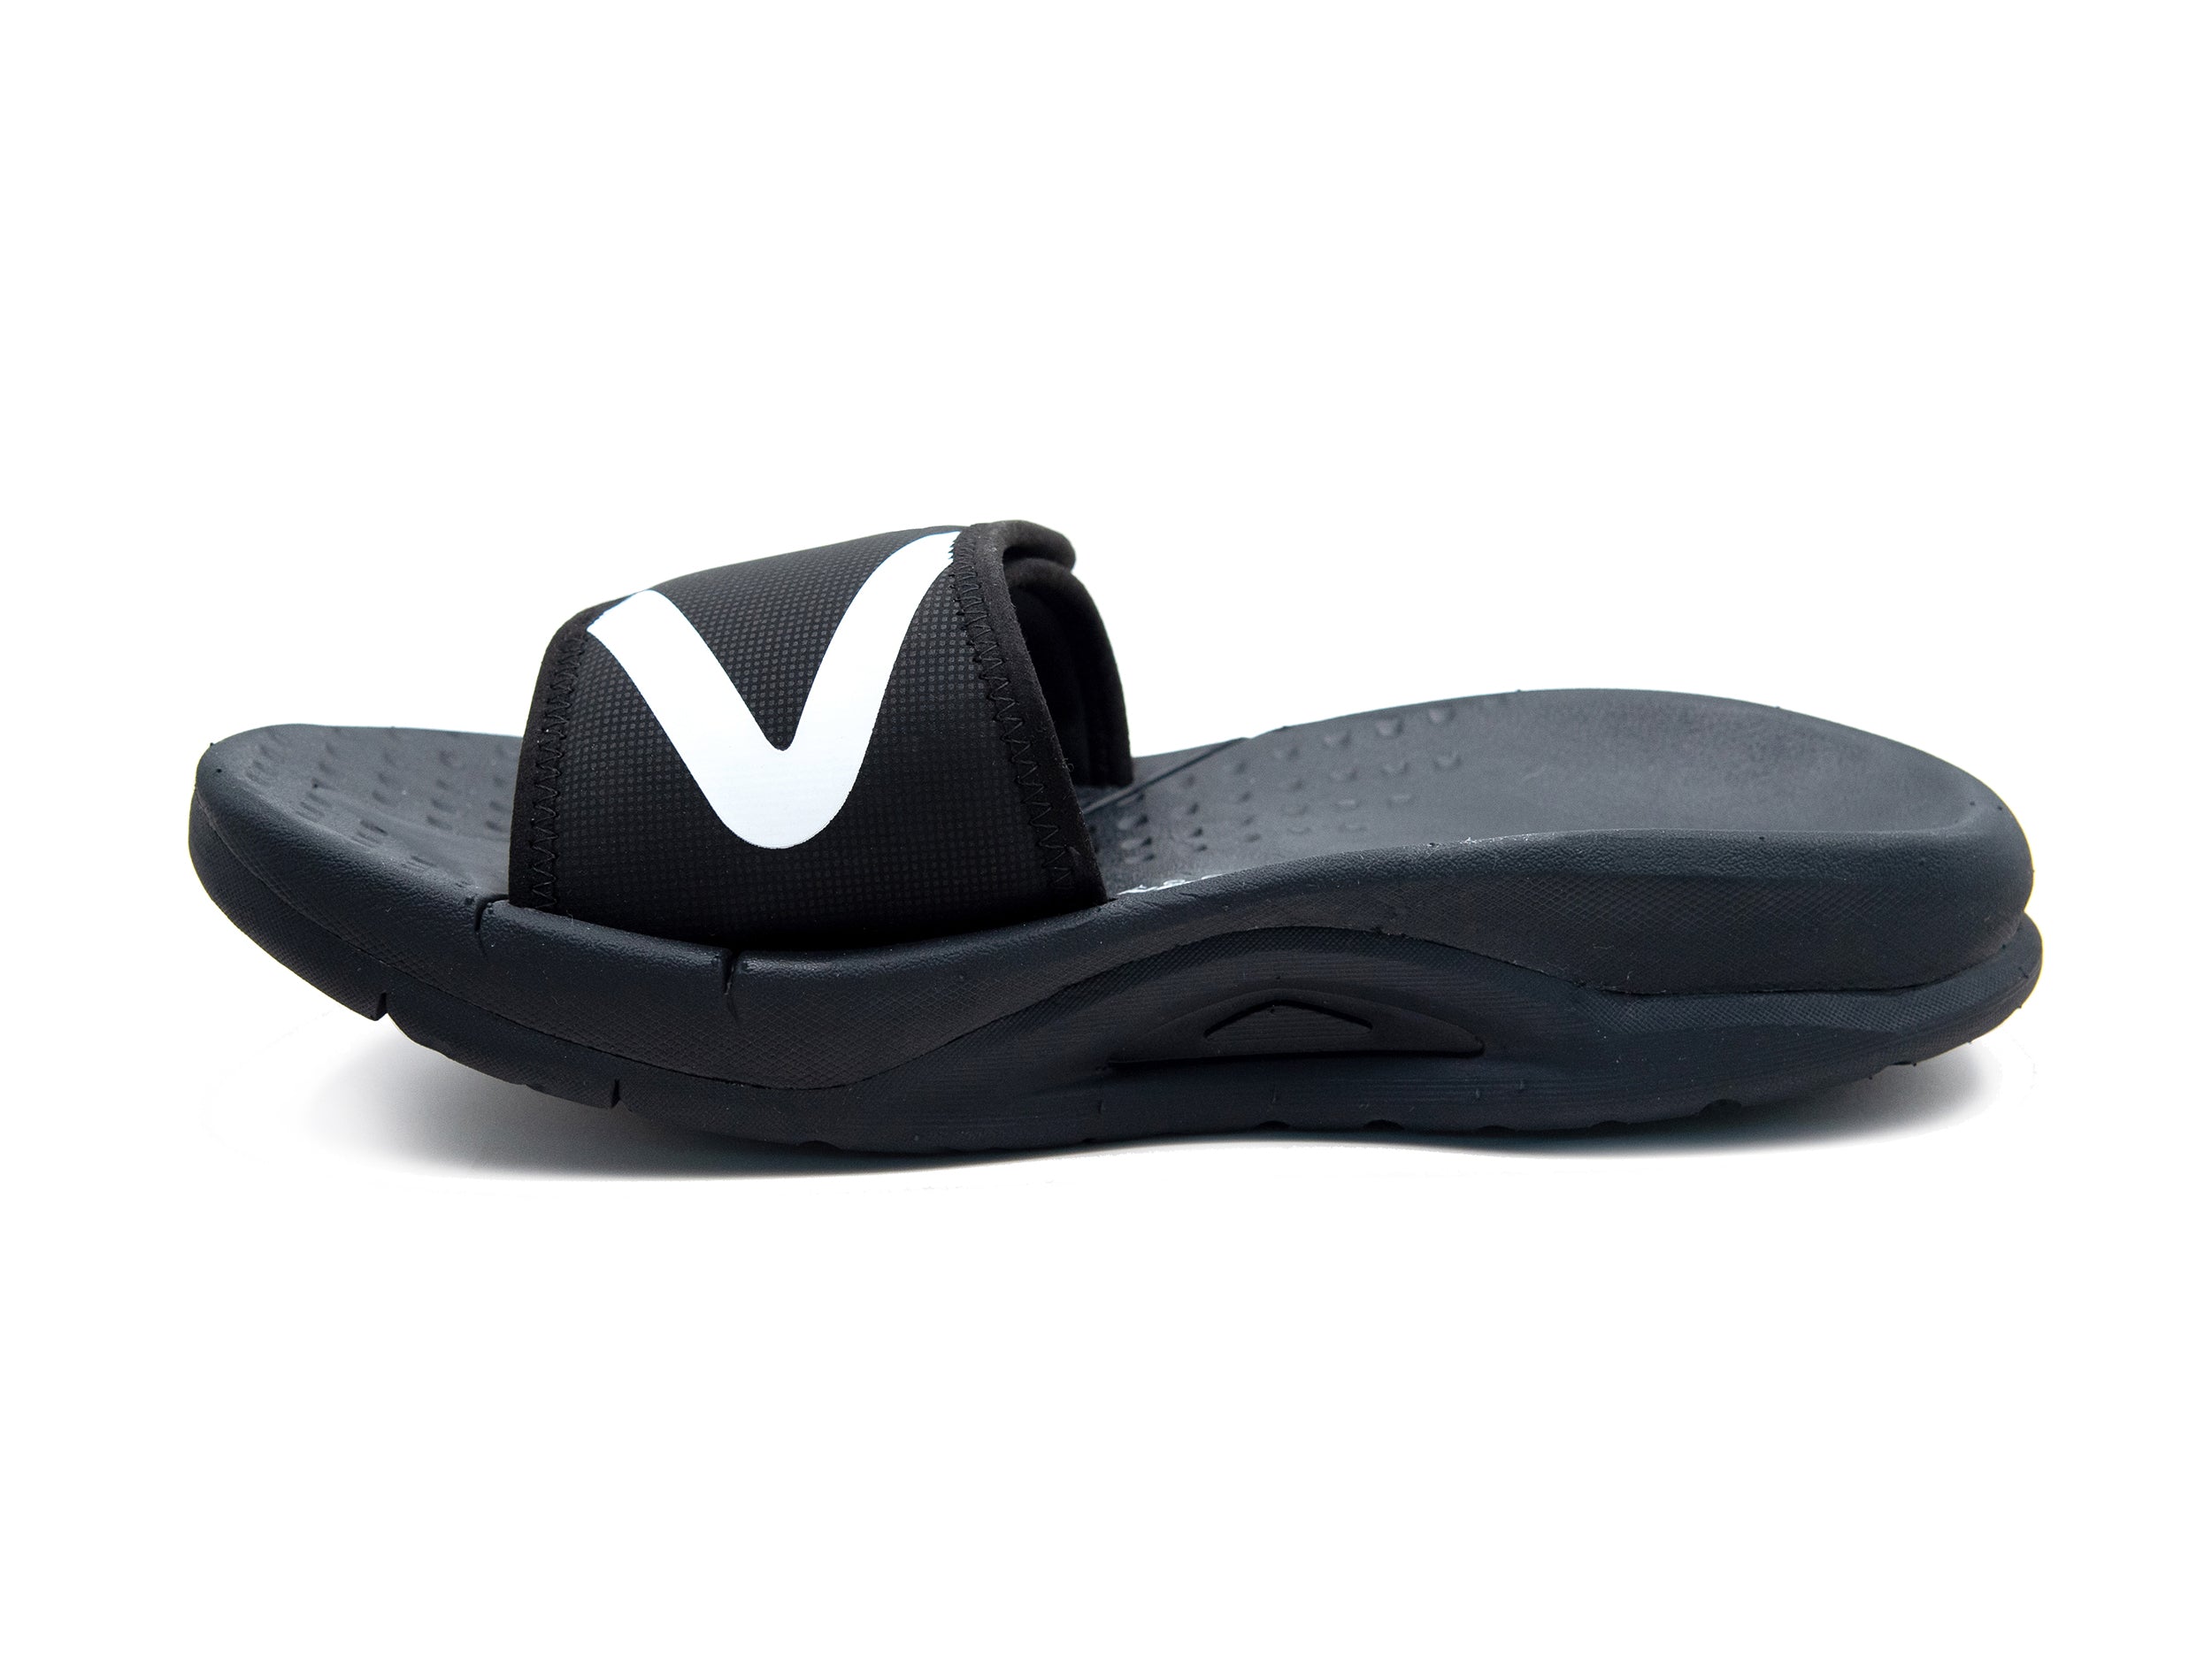 Velous Hoya Adjustable Slide Slipper